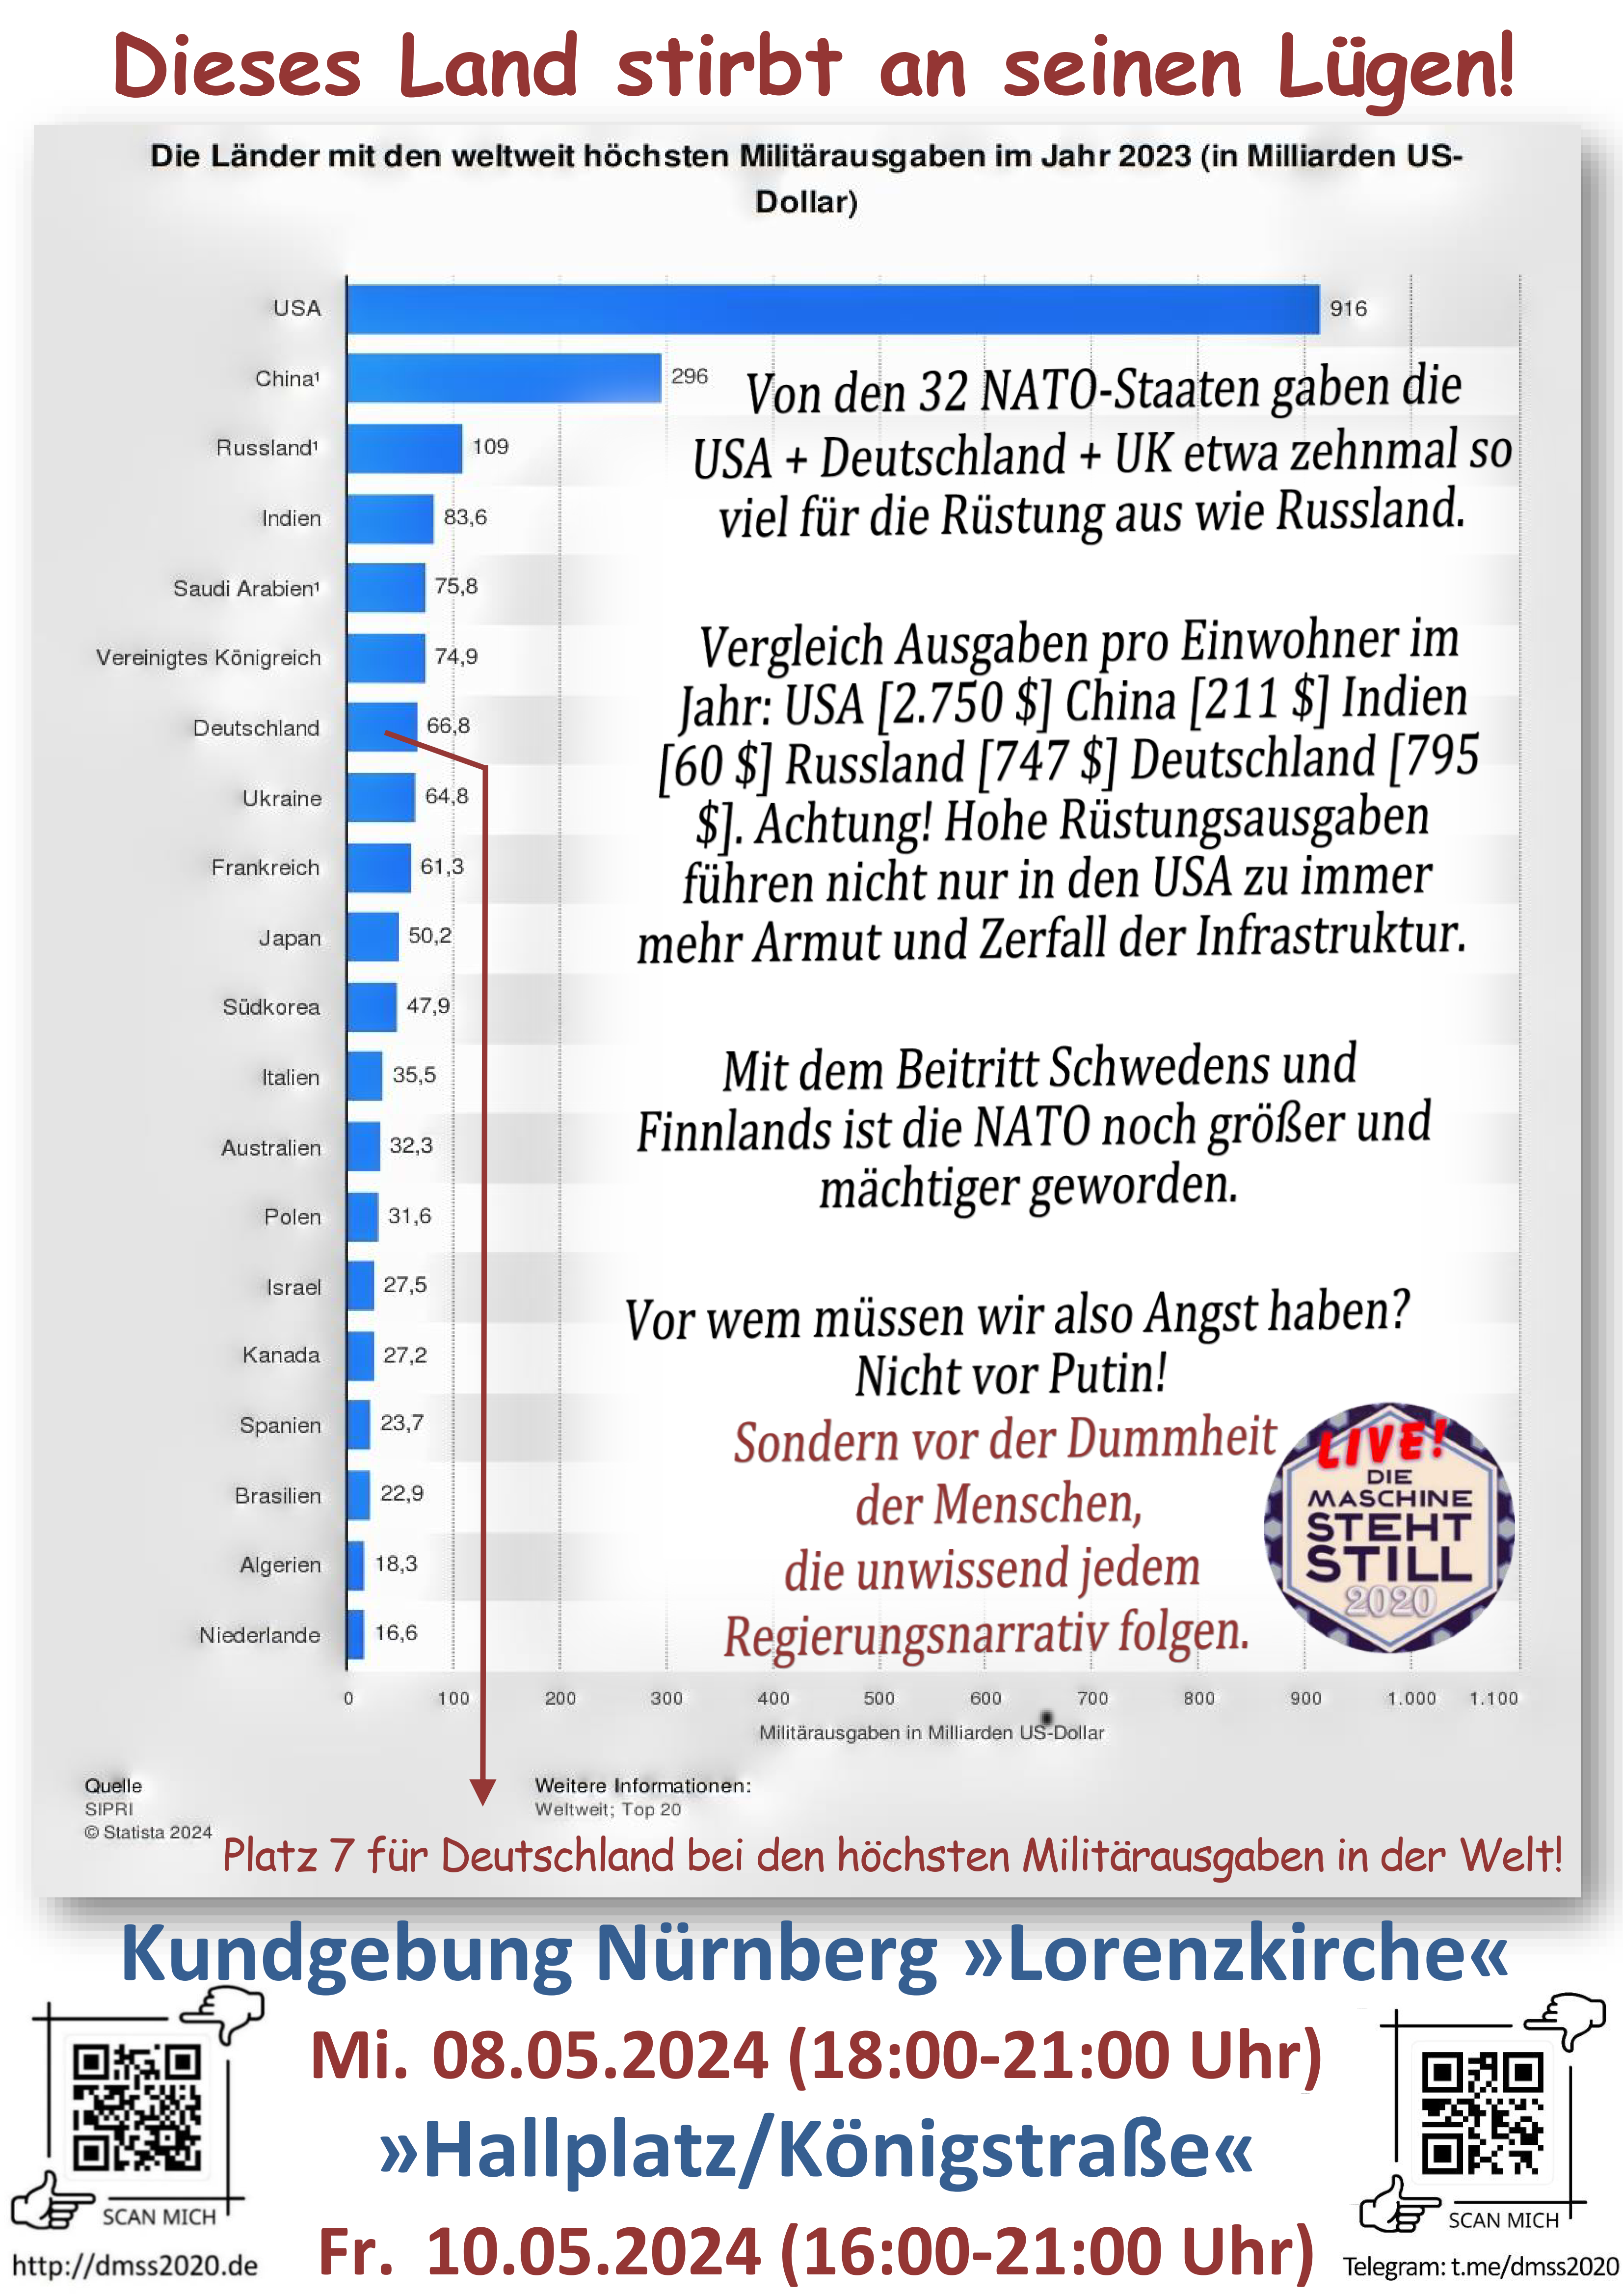 Deutschland liegt auf Rang 7 bei den weltweiten Rüstungsausgaben